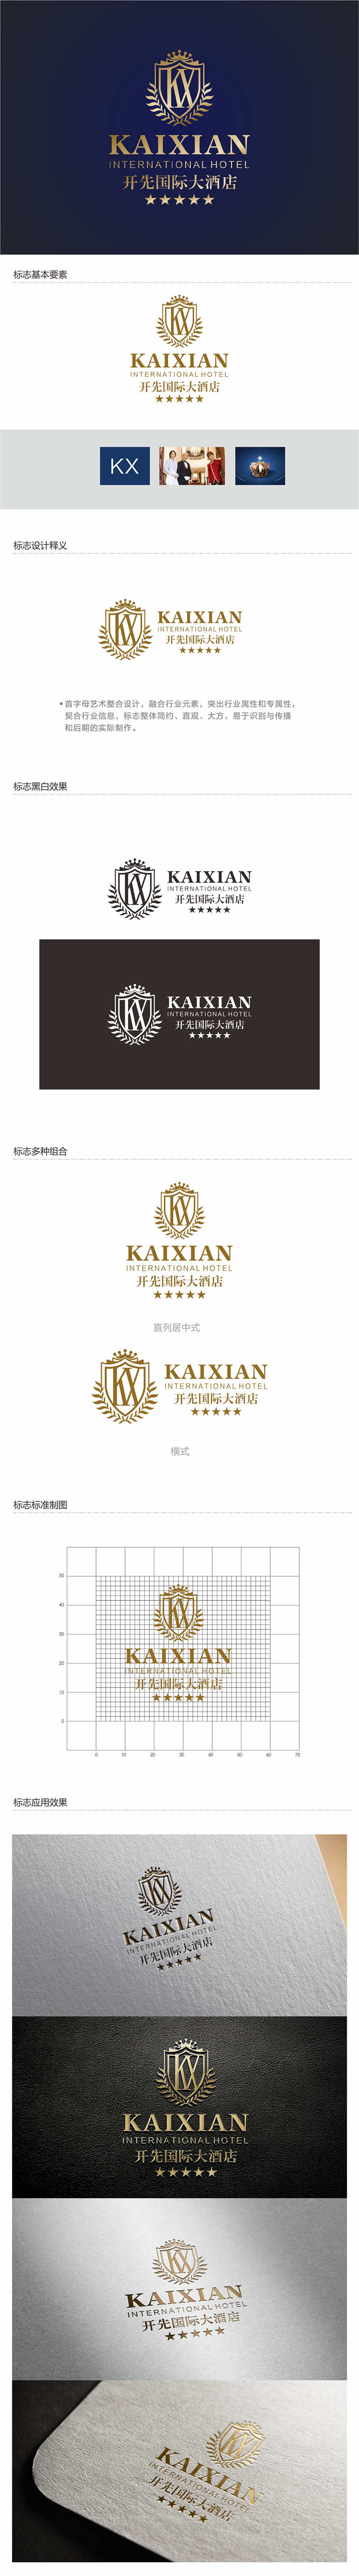 邓建平的开先国际大酒店logo设计